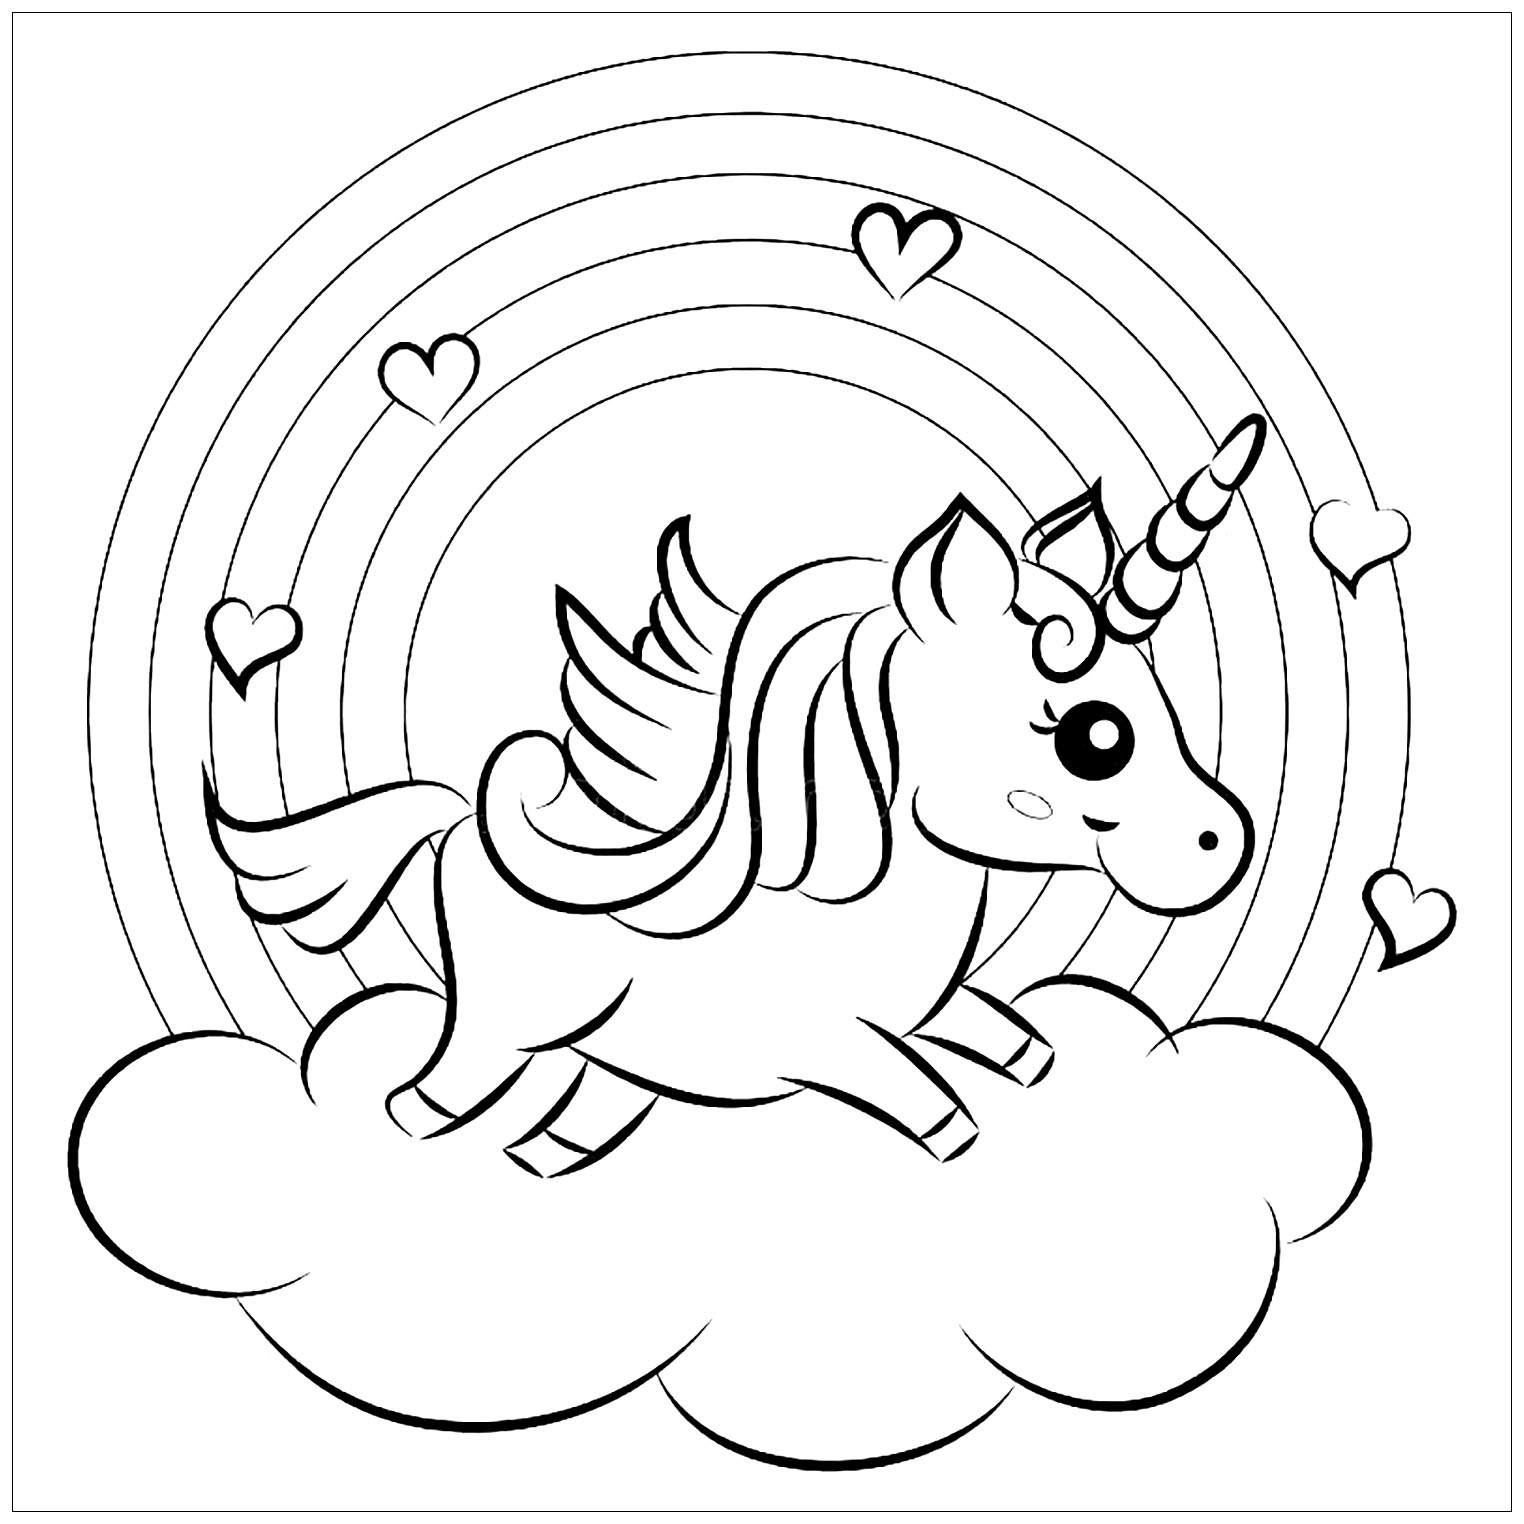 Desenho para Colorir Unicornio! Ative a Criatividade!